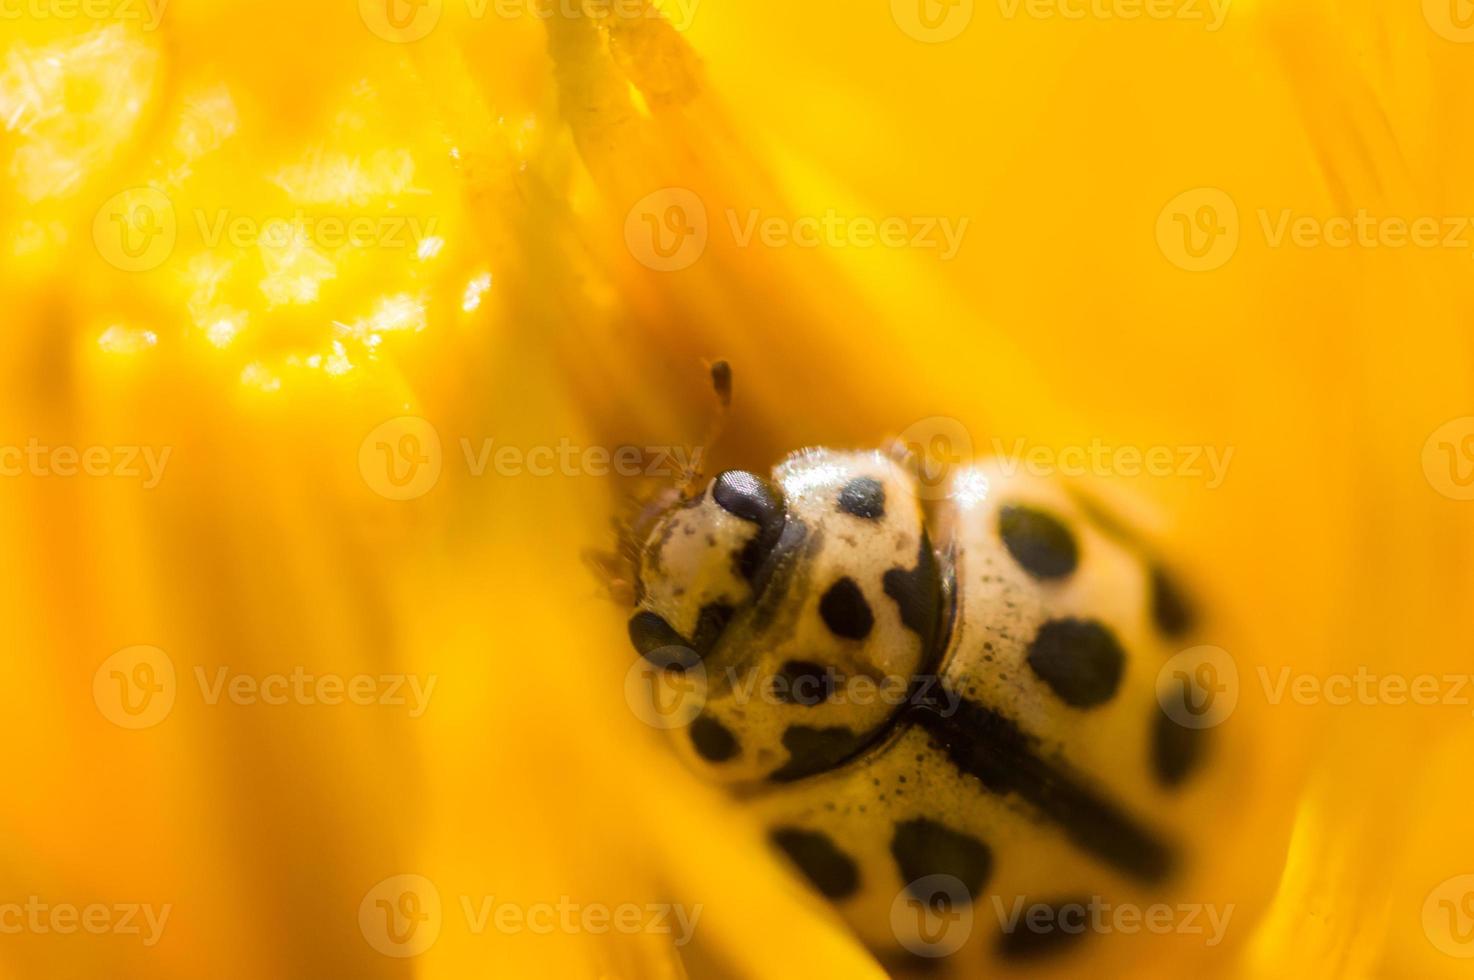 kleiner Marienkäfer im Makro versteckt in gelben Blütenblättern des Löwenzahns foto